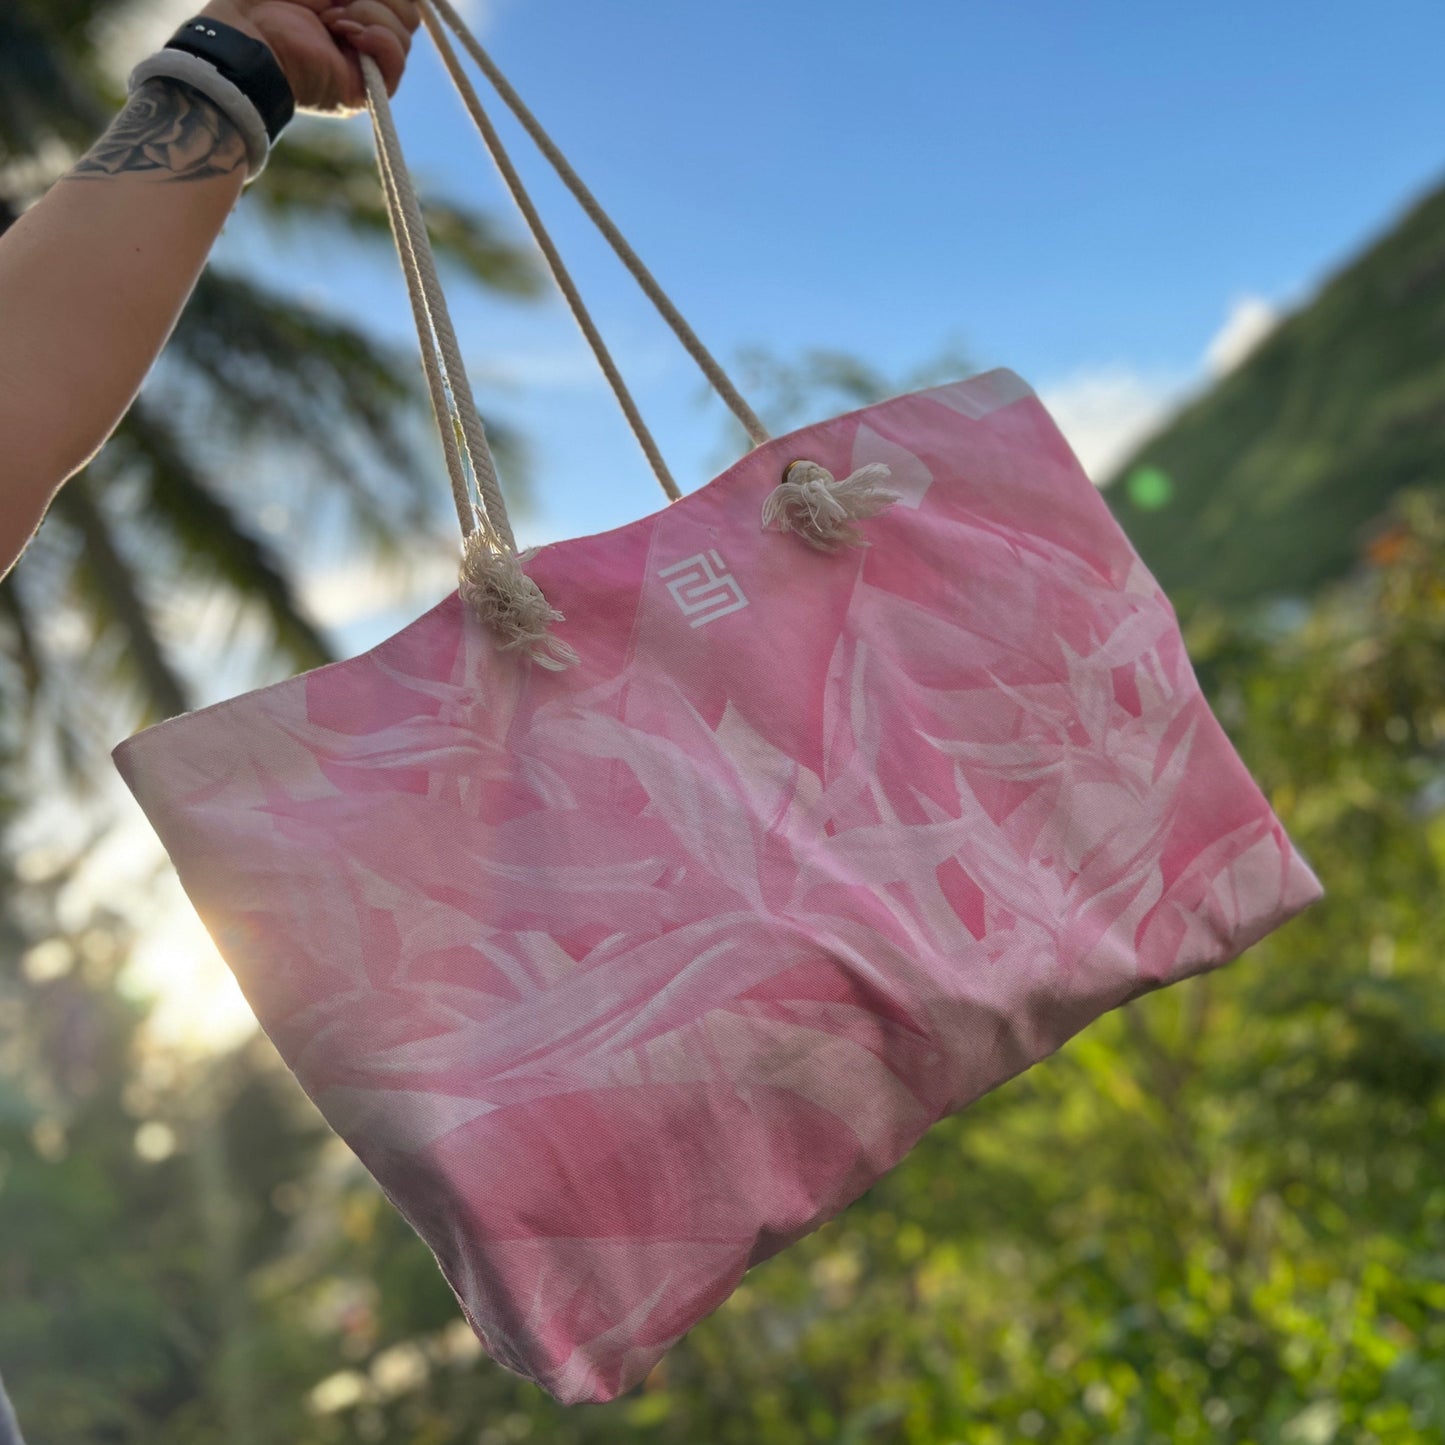 Pink Bird of Paradise Beach Bag